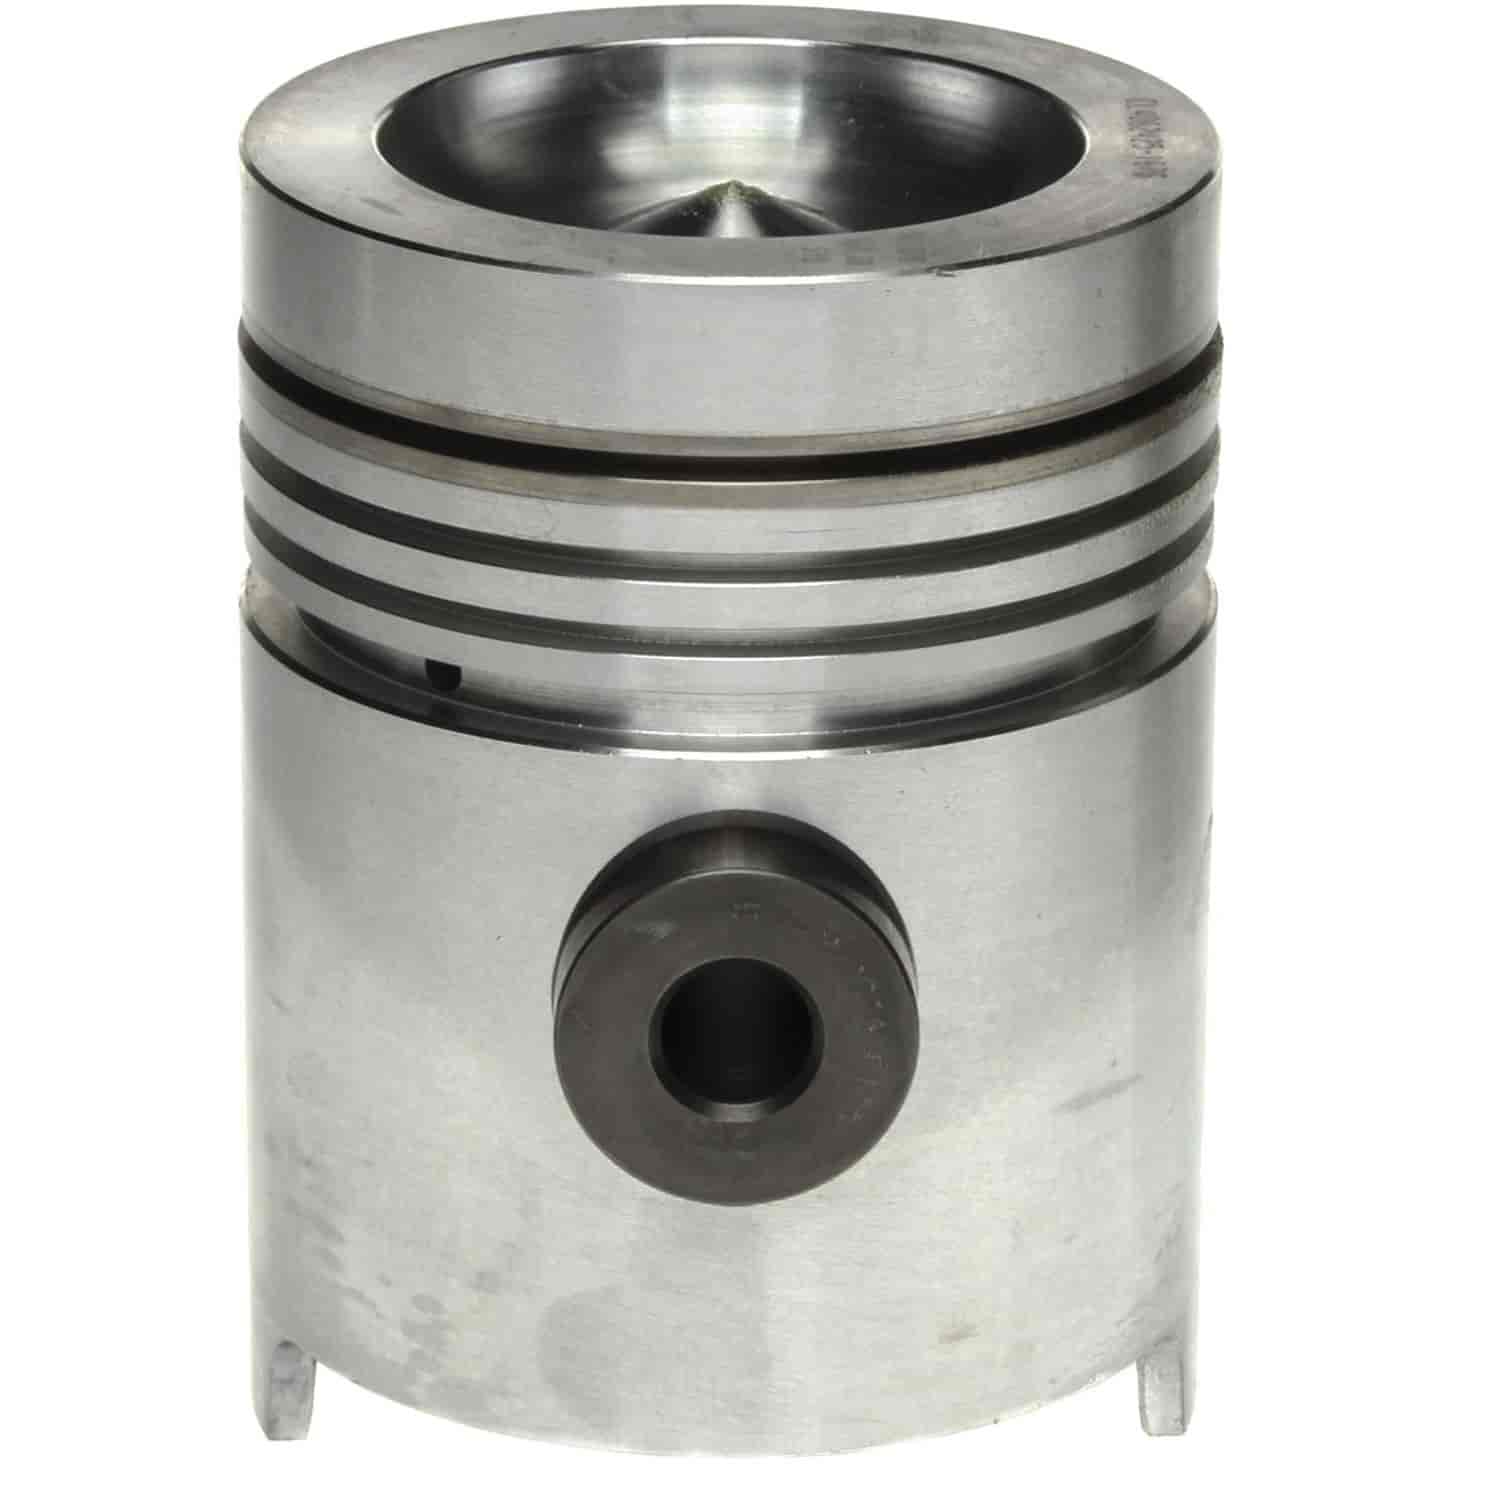 Cylinder Sleeve Assembly Allis-Chalmers 426 cid 7.0L D3400 D3500 Non Mark 670 670I 670T D3400